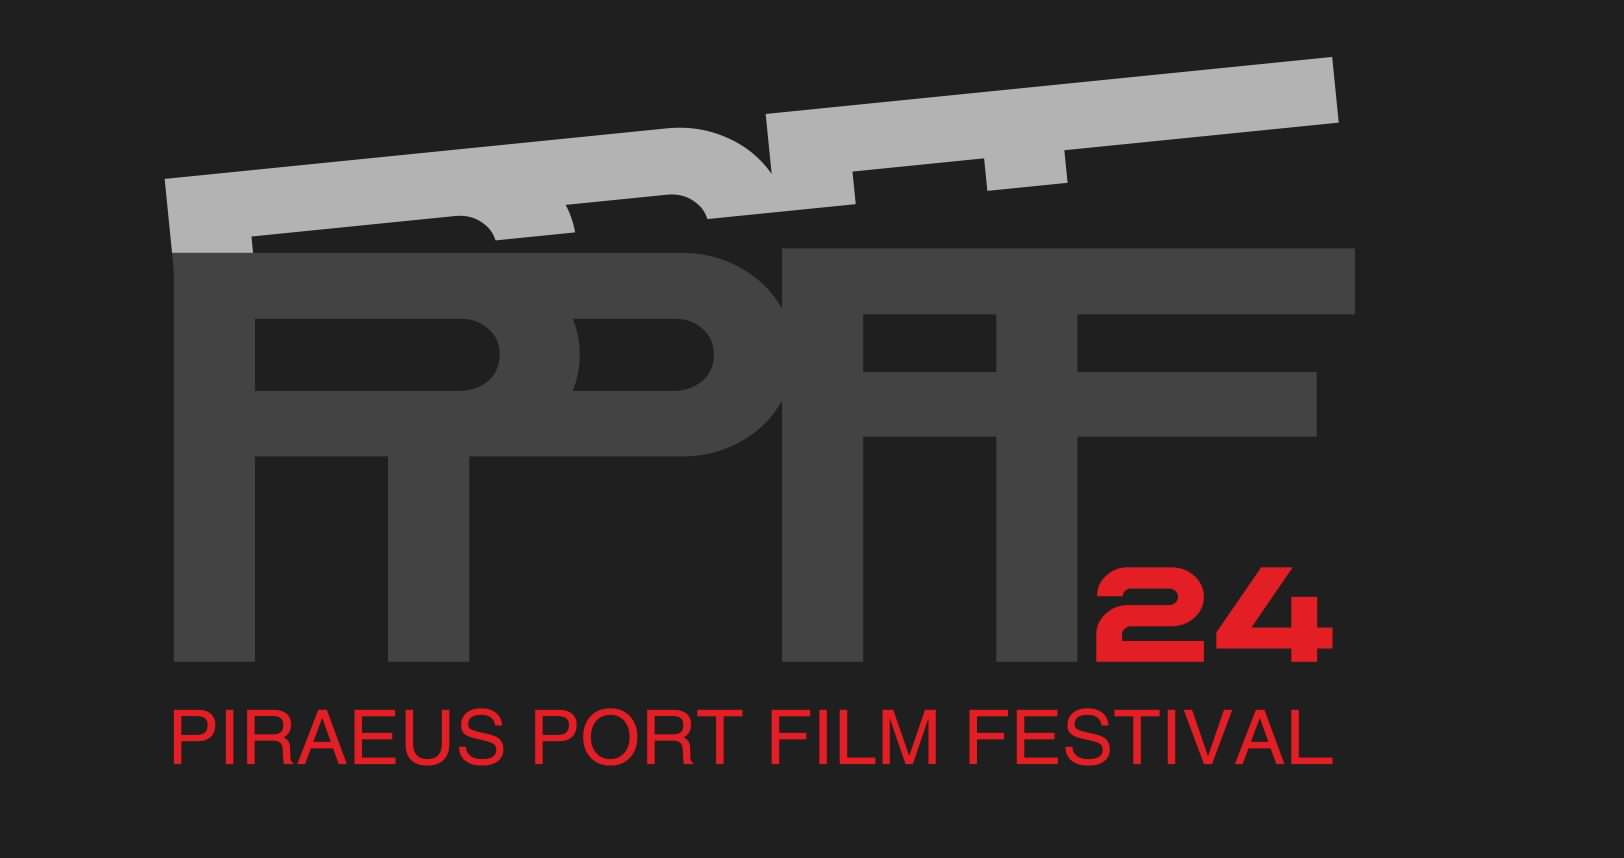 Το PIRAEUS PORT FILM FESTIVAL 24 θα πραγματοποιηθεί στις 6 Ιουνίου στον Κινηματογράφο ΖΕΑ